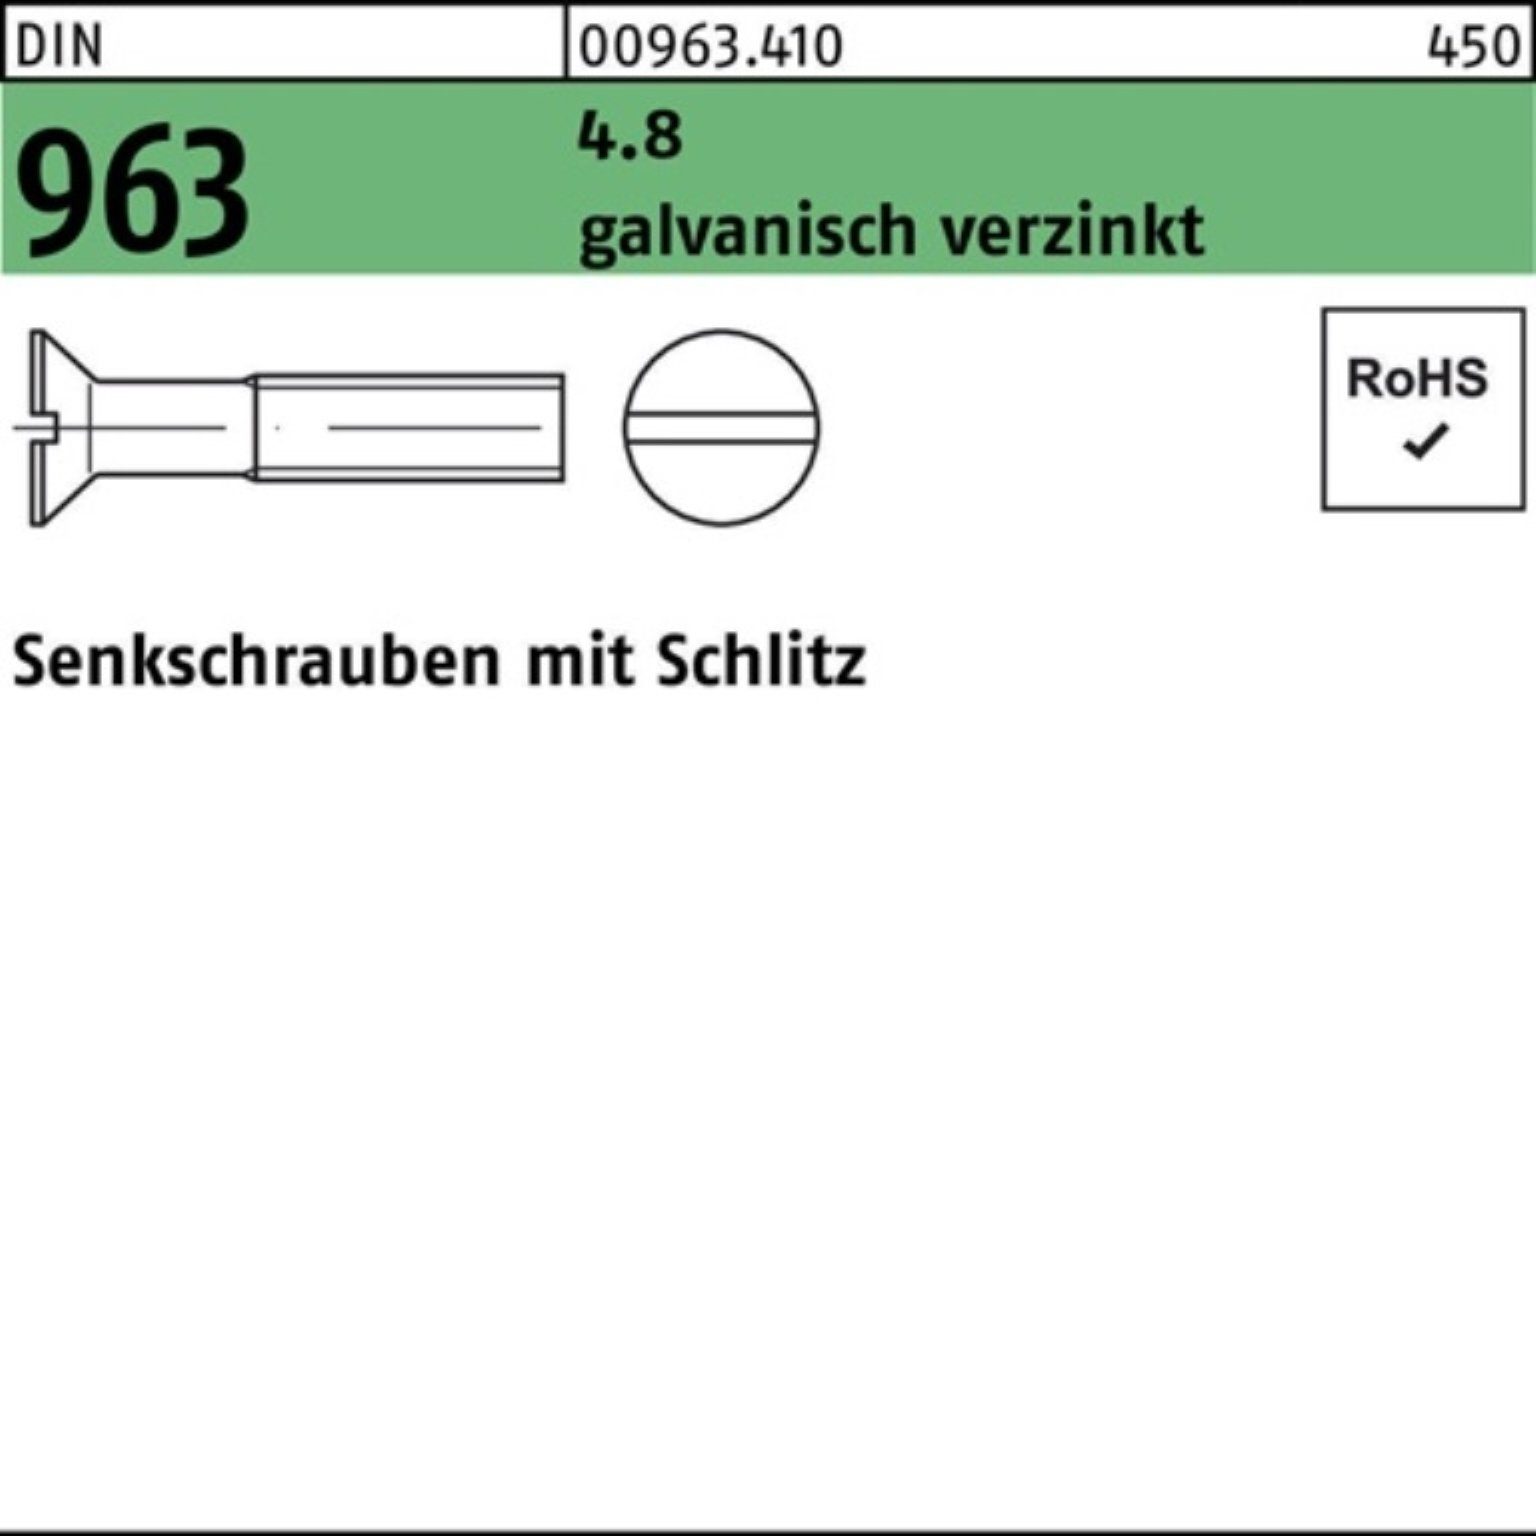 Senkschraube Schlitz 200 St DIN 4.8 200er 16 M2,5x Reyher Pack Senkschraube 963 galv.verz.